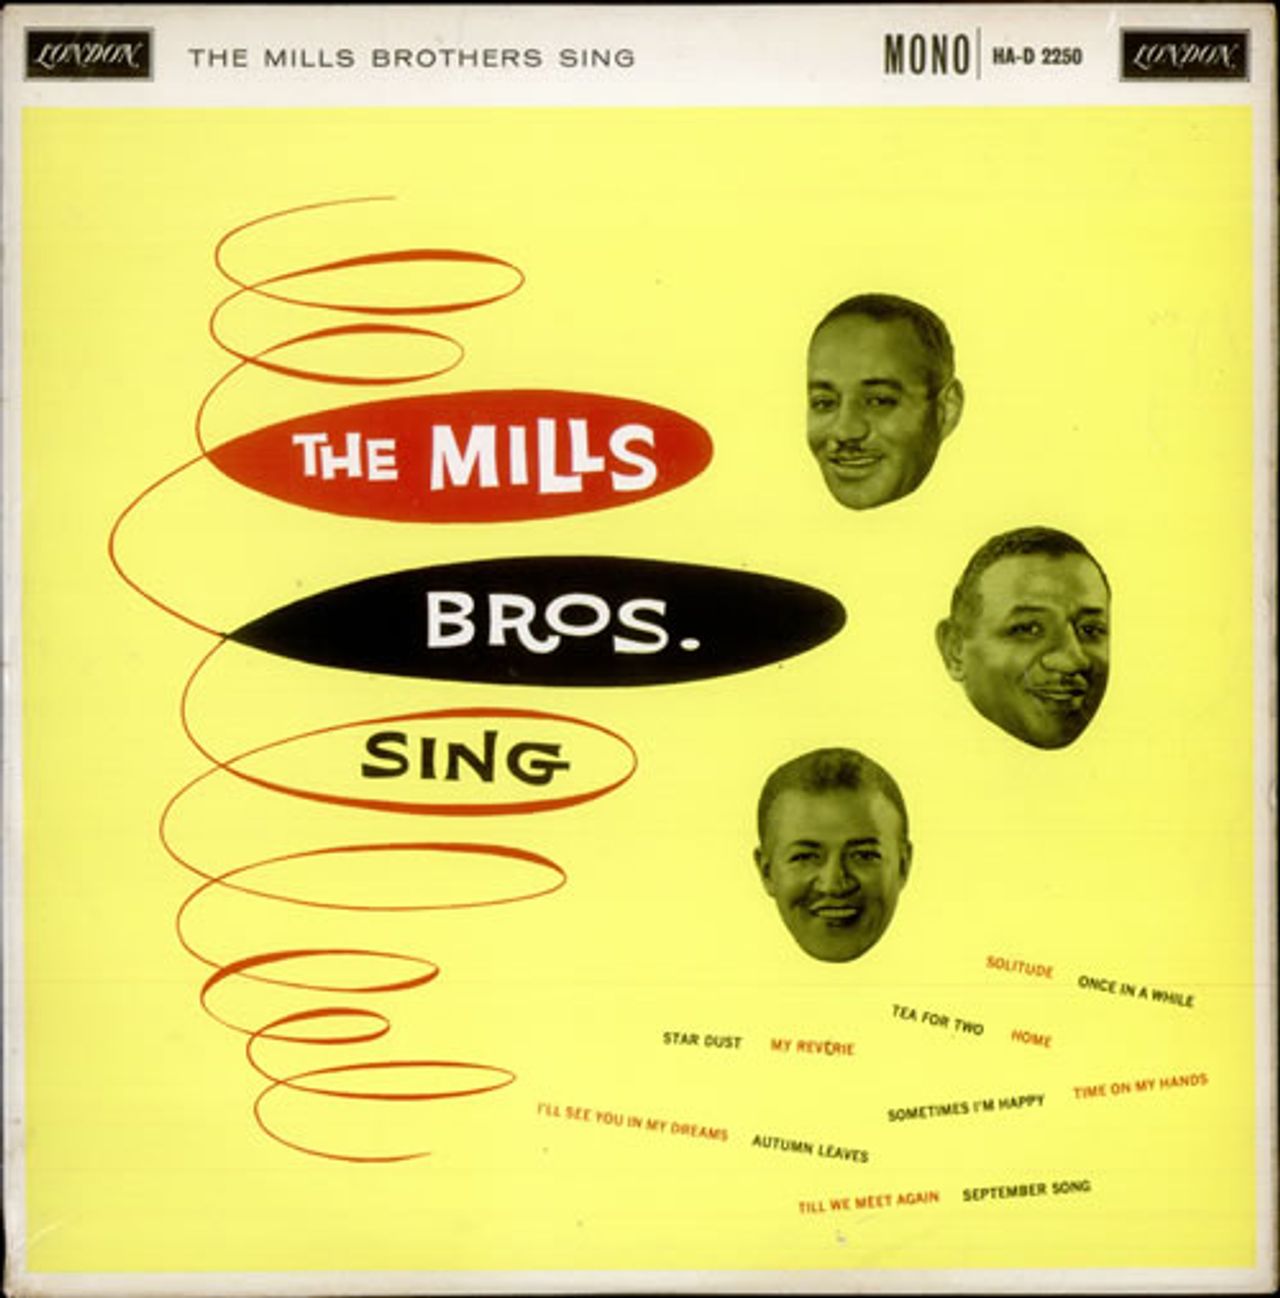 slutpunkt opnå fotografering The Mills Brothers The Mills Brothers Sing UK Vinyl LP — RareVinyl.com